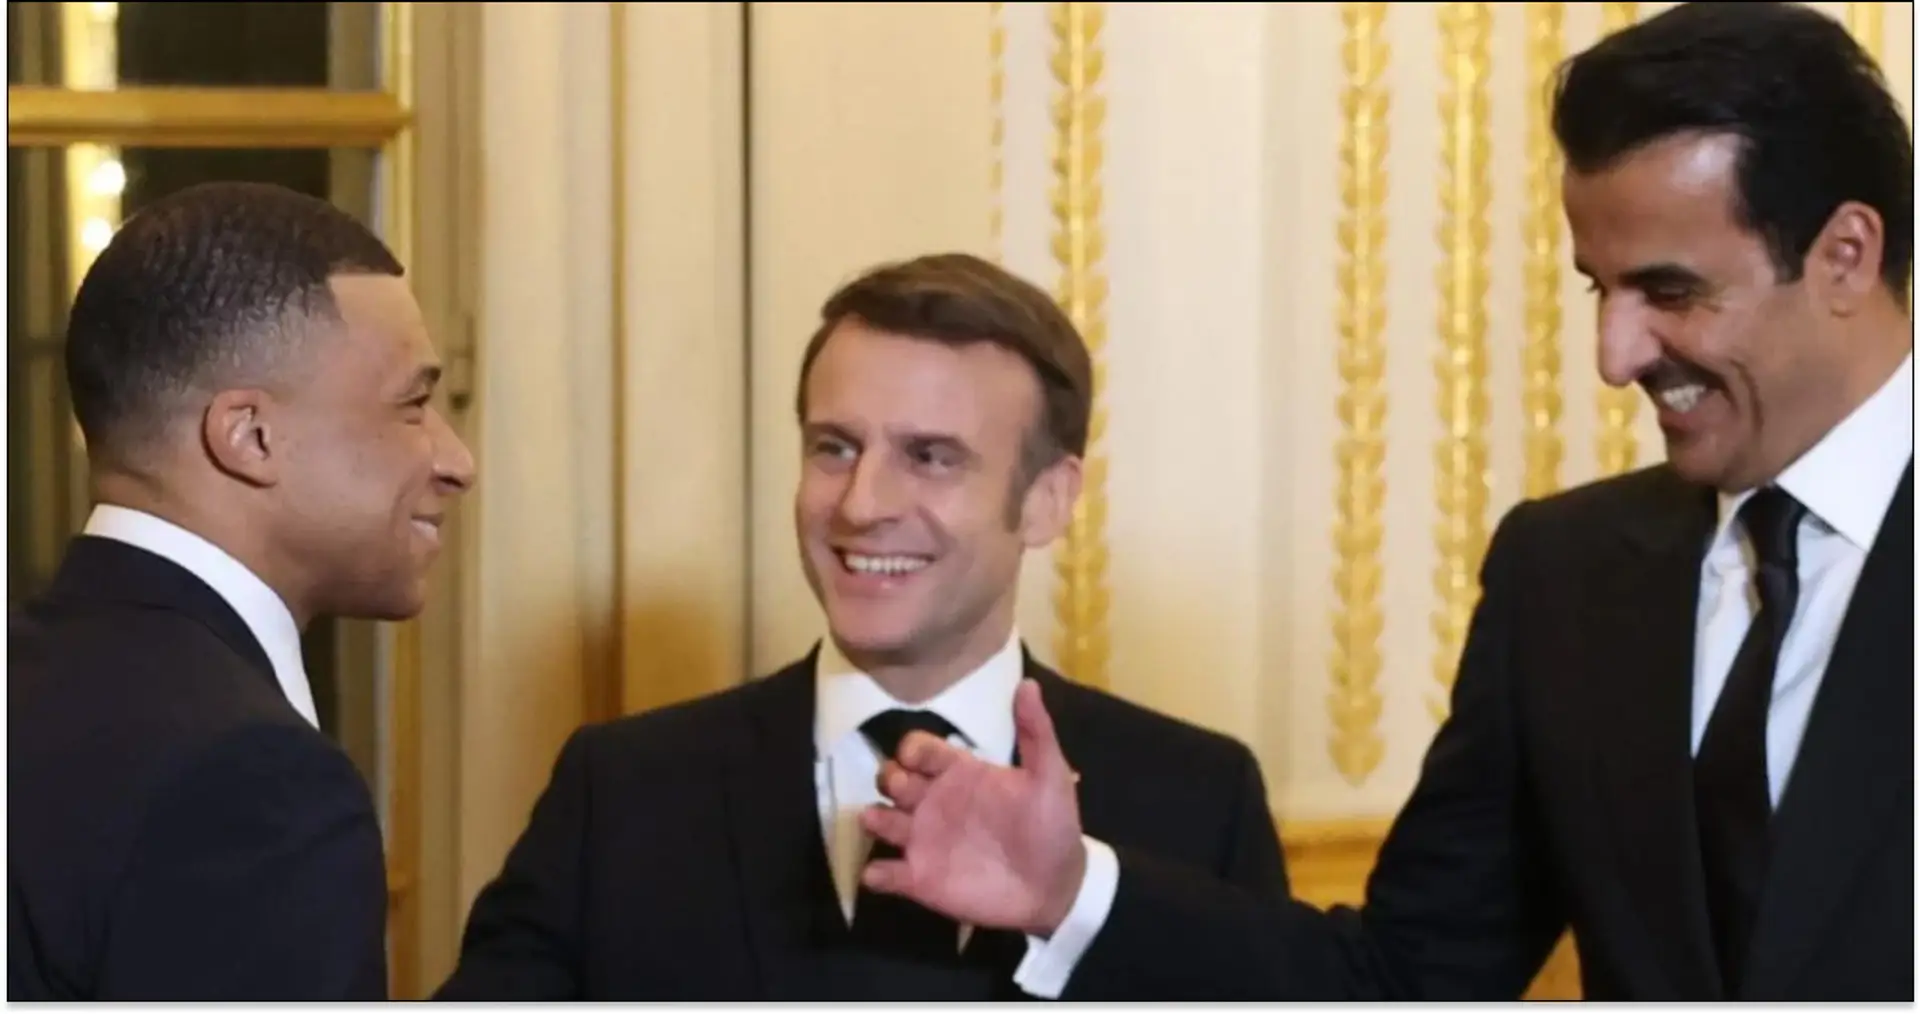 Macron scherzt mit Mbappe beim Staatsbankett über dessen Wechsel nach Madrid